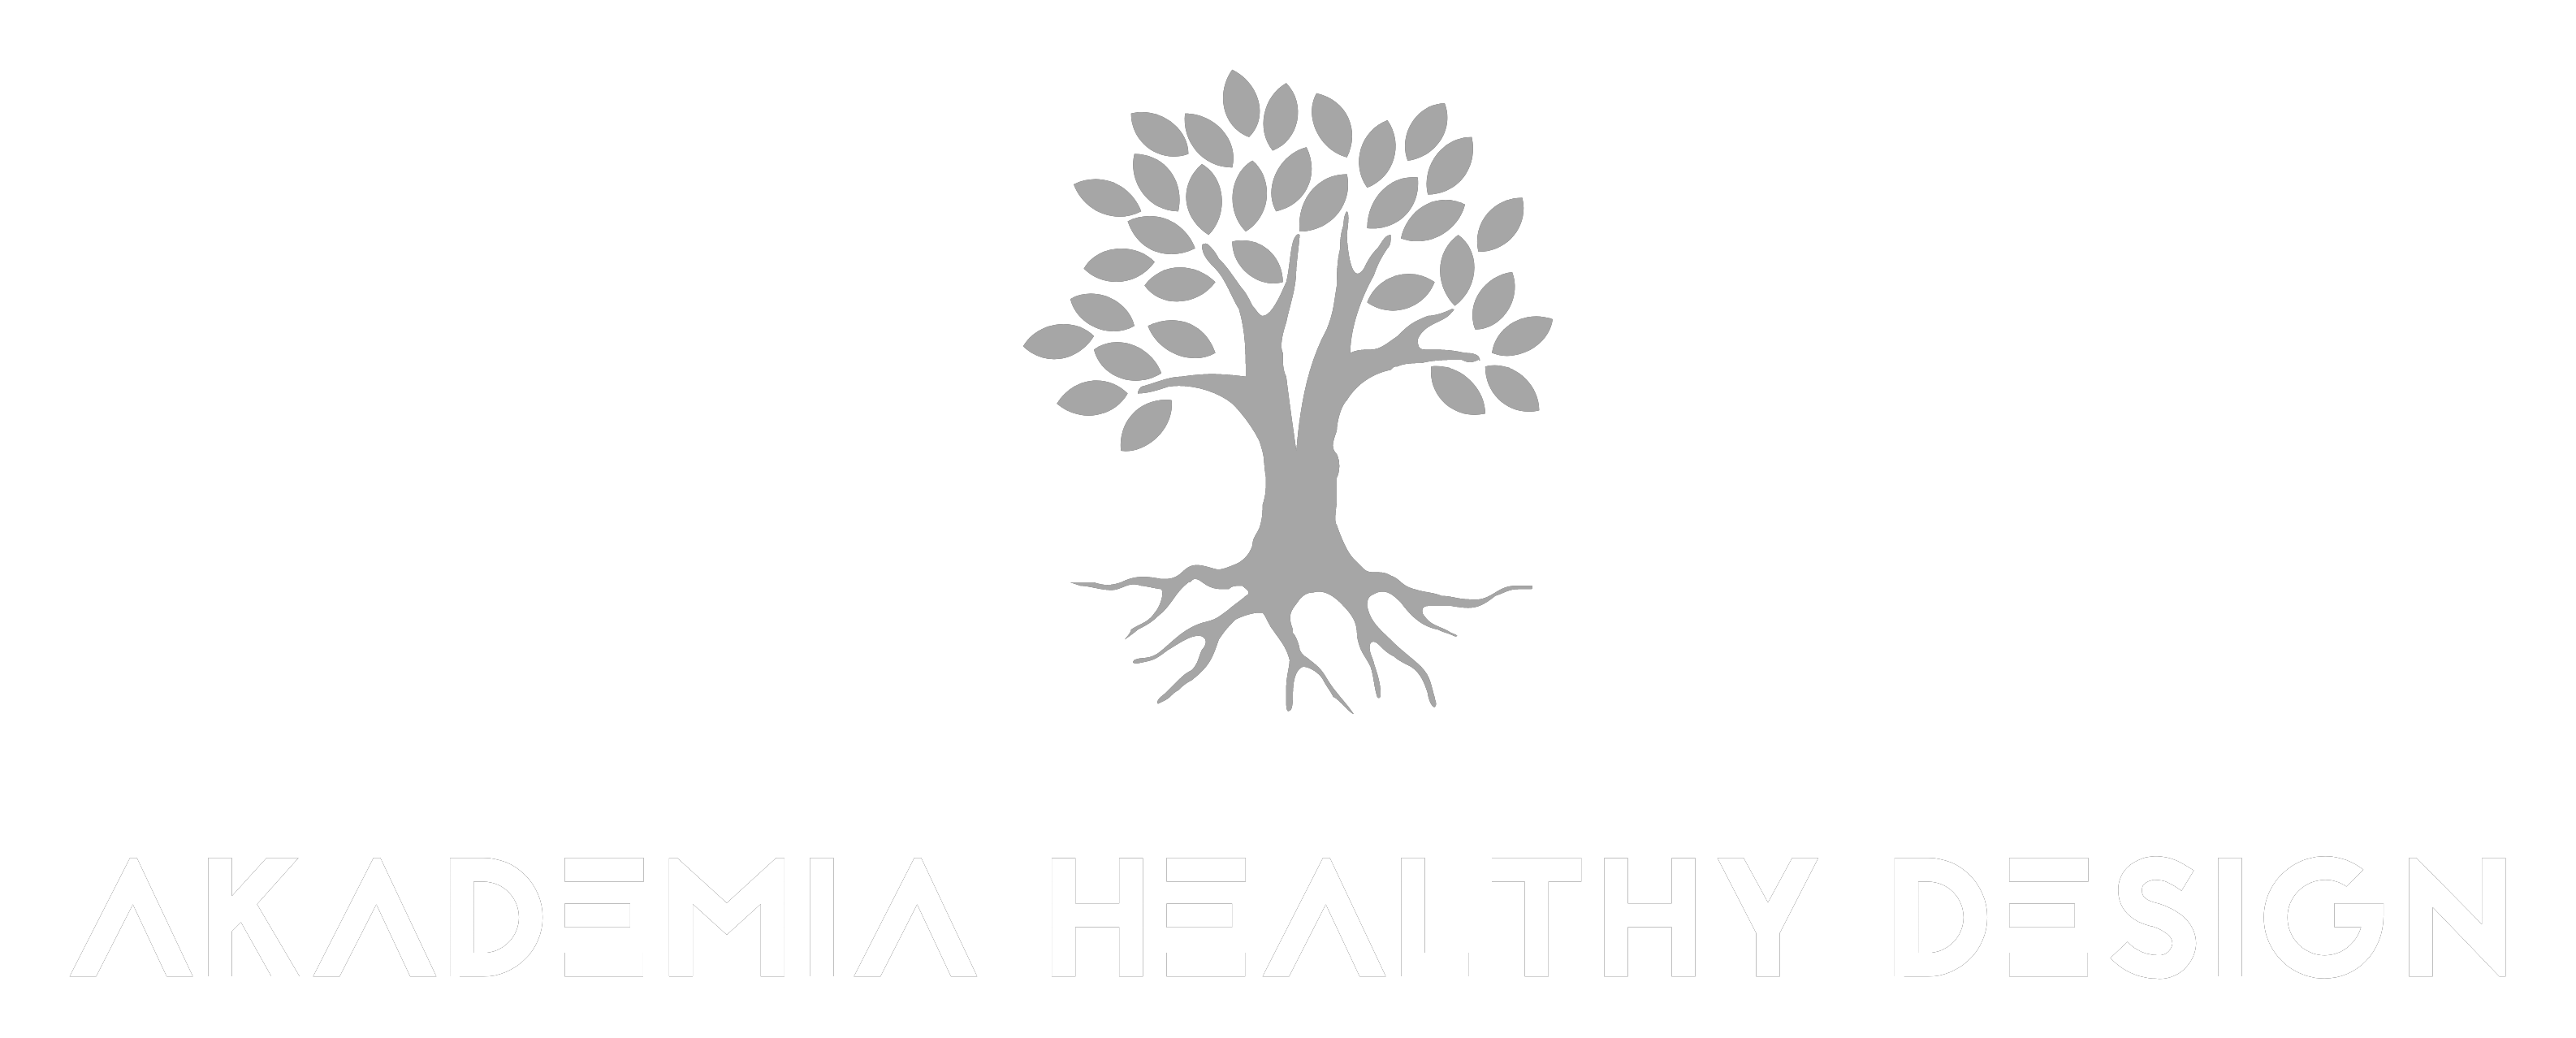 akademia healthy design logo